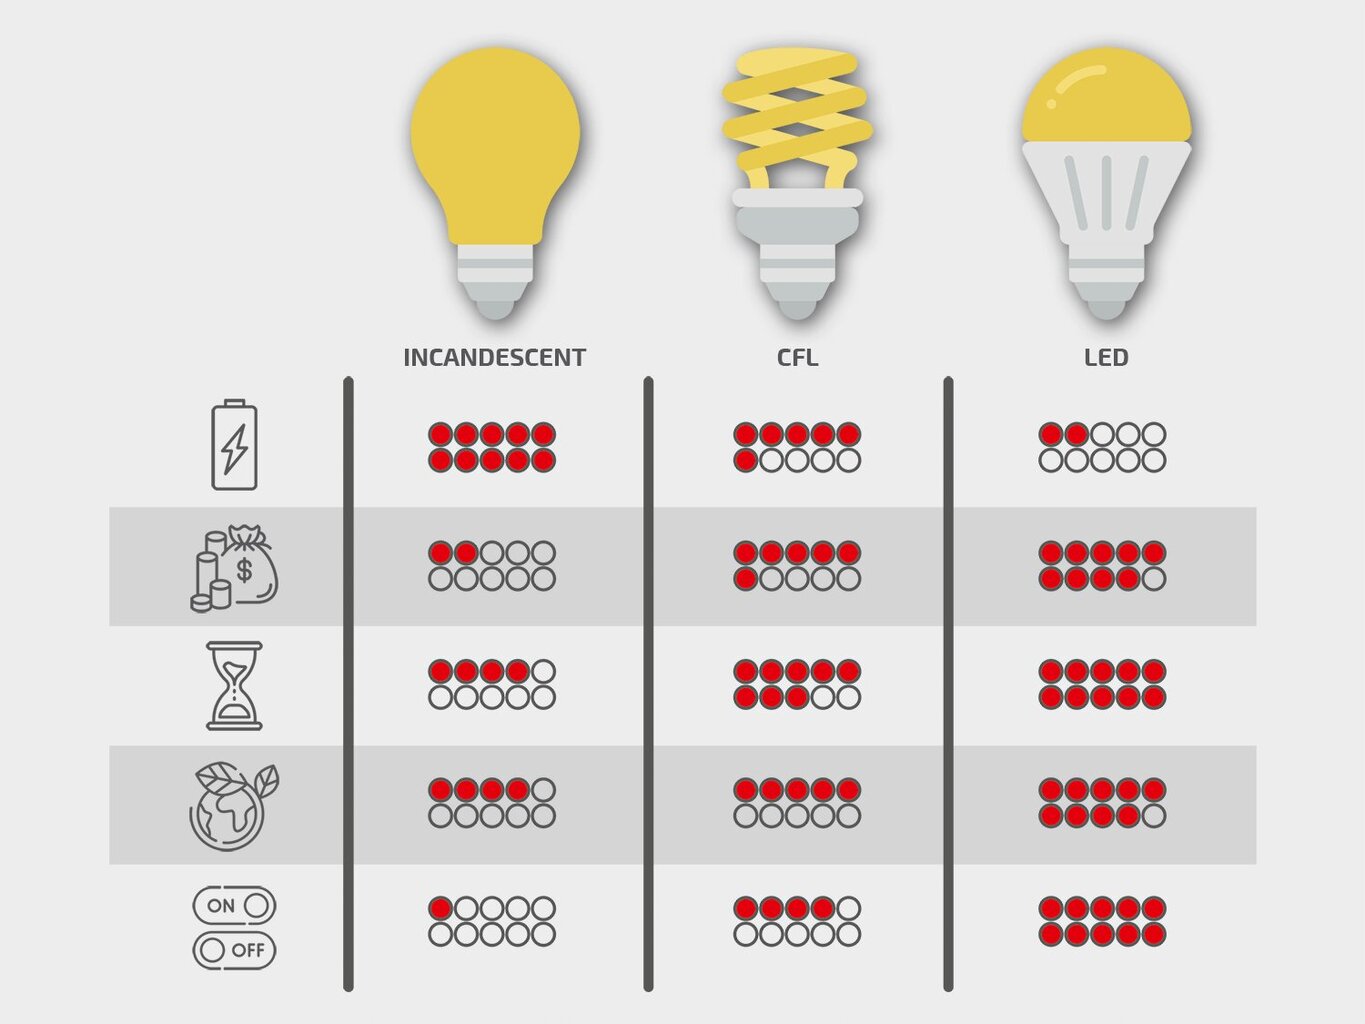 Koloreno LED panelė, 18 W, šiltai balta kaina ir informacija | Įmontuojami šviestuvai, LED panelės | pigu.lt